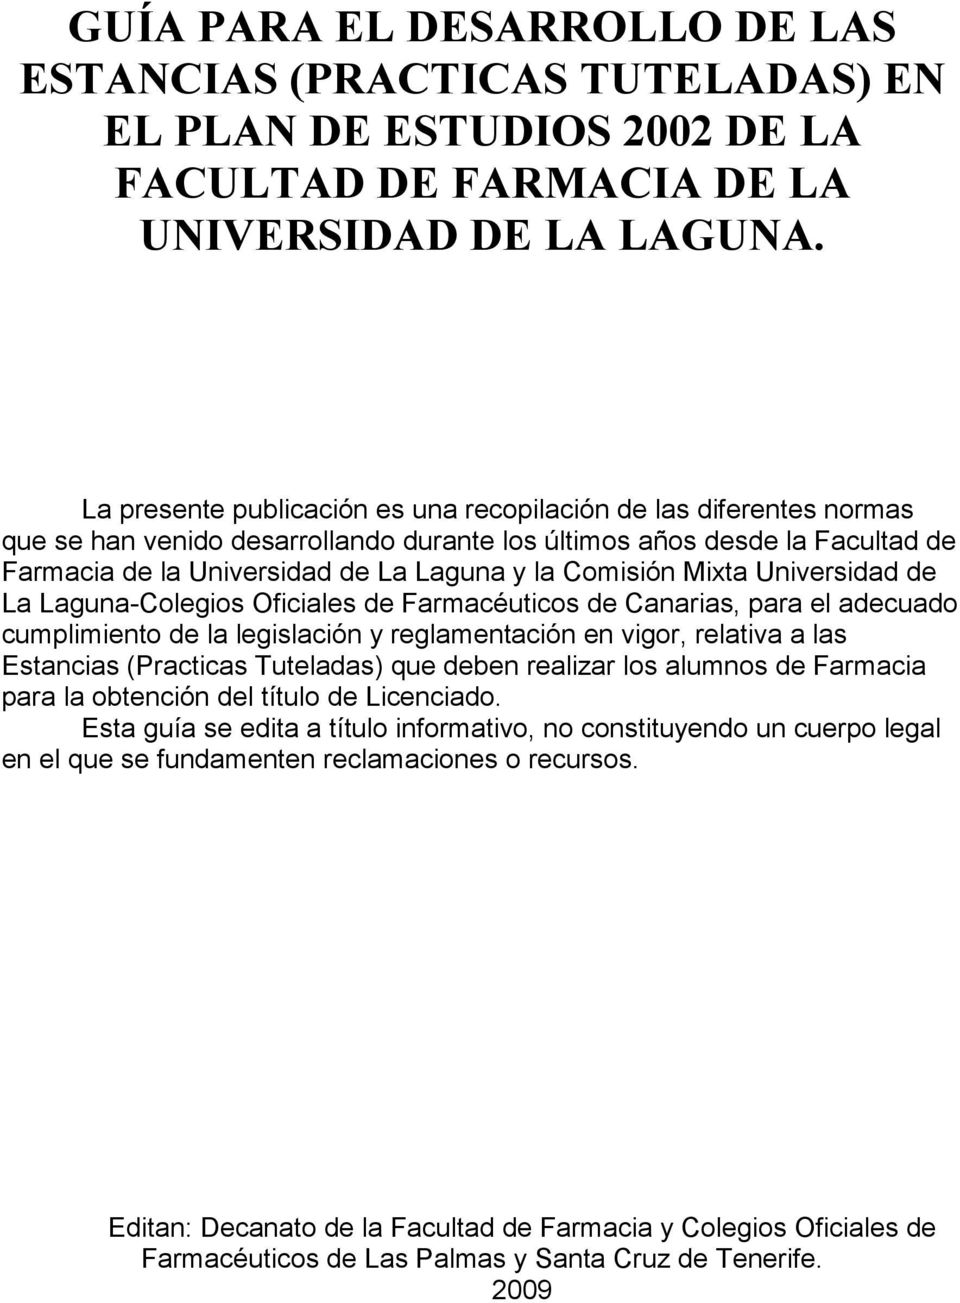 Comisión Mixta Universidad de La Laguna-Colegios Oficiales de Farmacéuticos de Canarias, para el adecuado cumplimiento de la legislación y reglamentación en vigor, relativa a las Estancias (Practicas